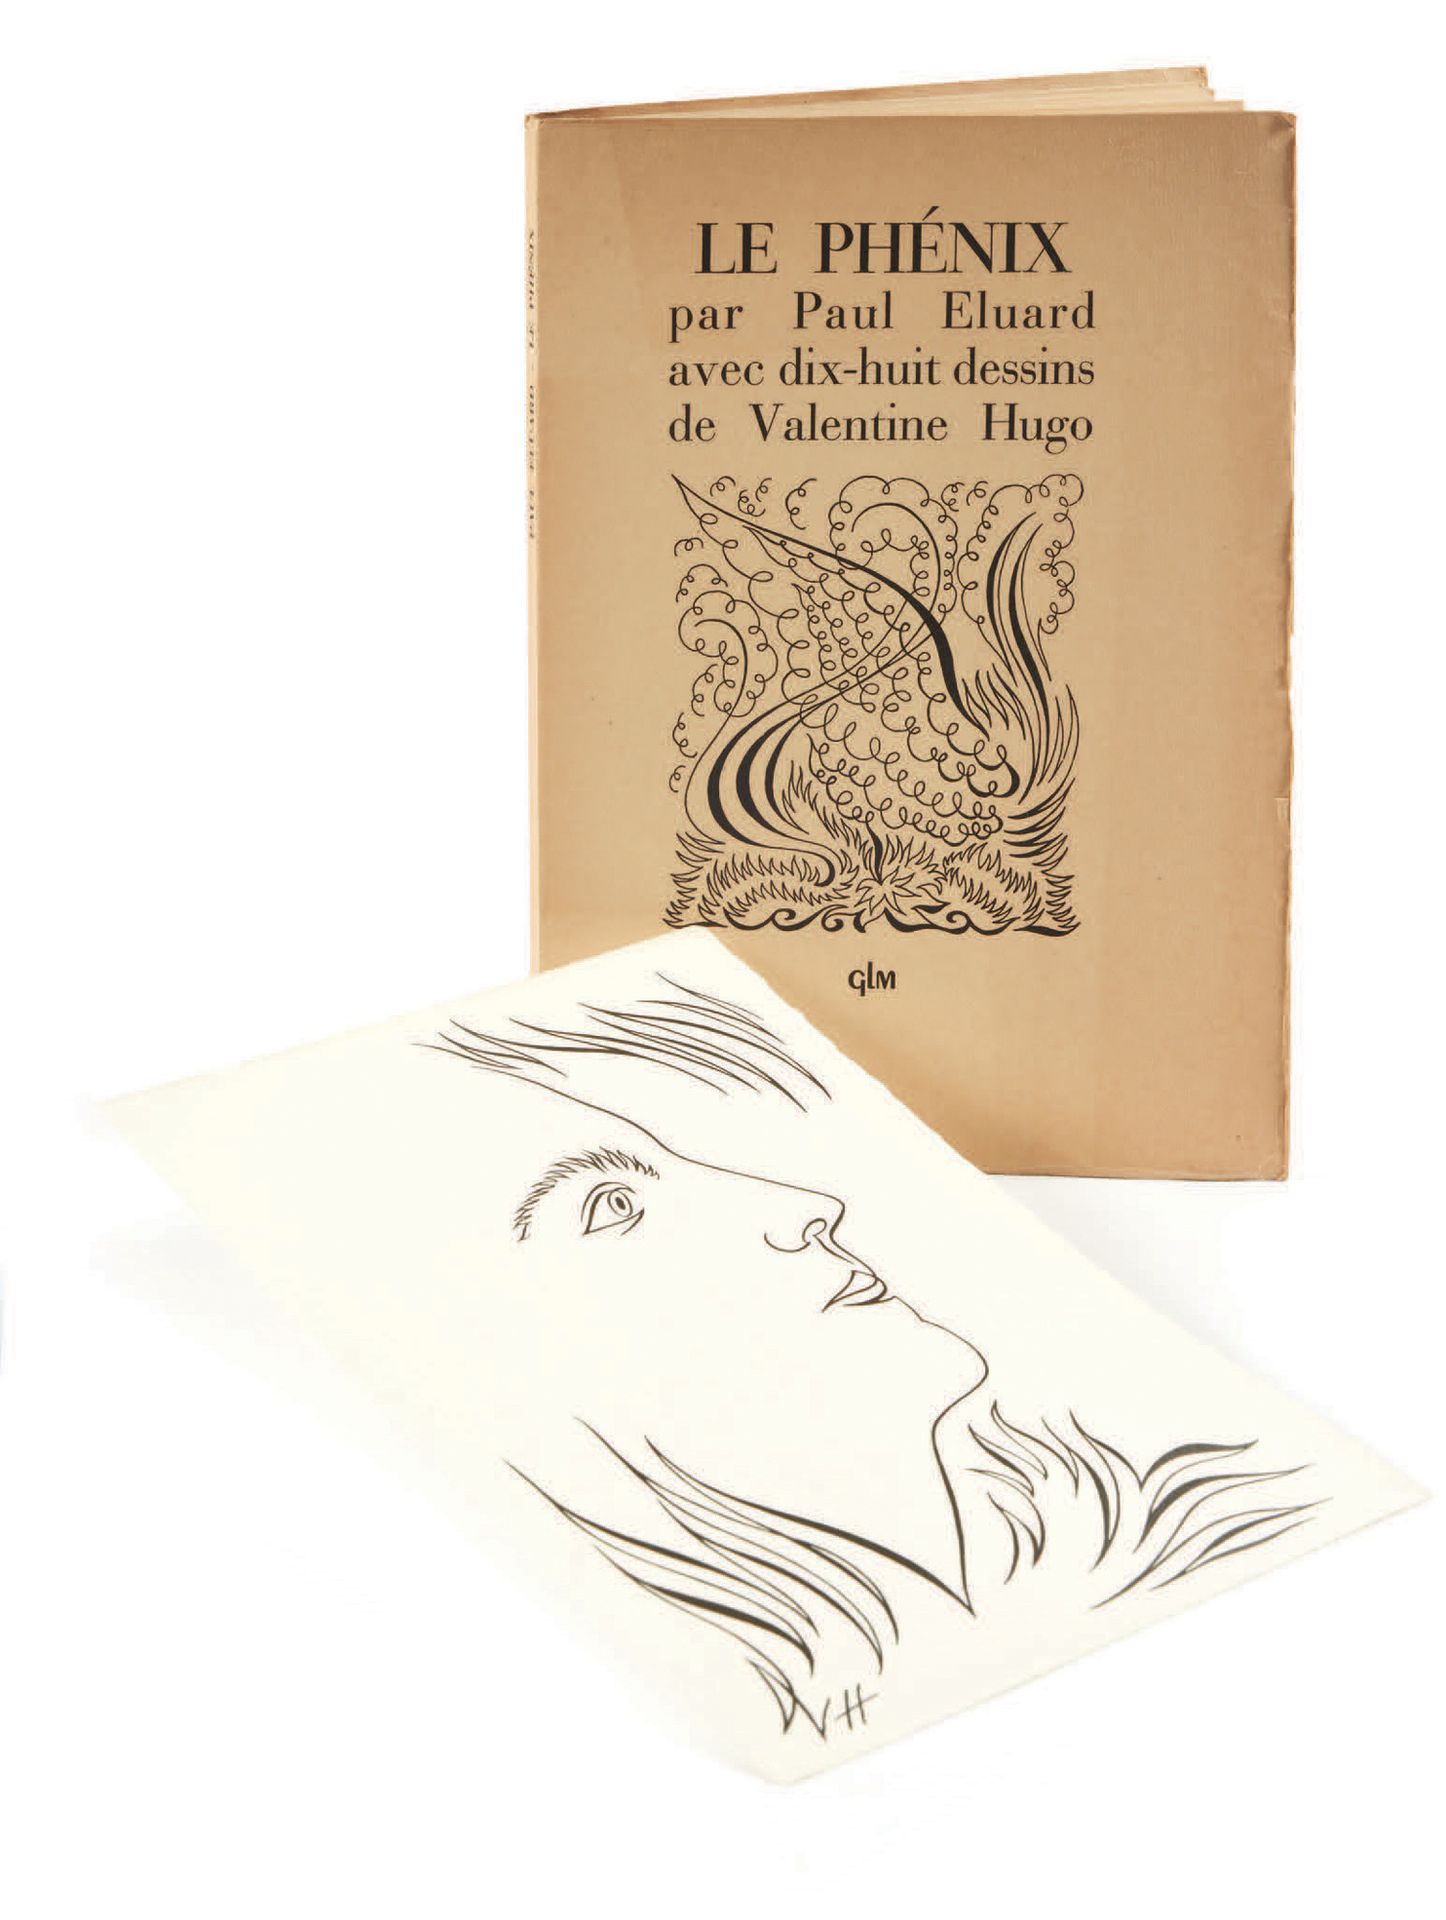 Paul Eluard. Le Phénix con dieciocho dibujos de Valentine Hugo. París, GLM, 1952&hellip;